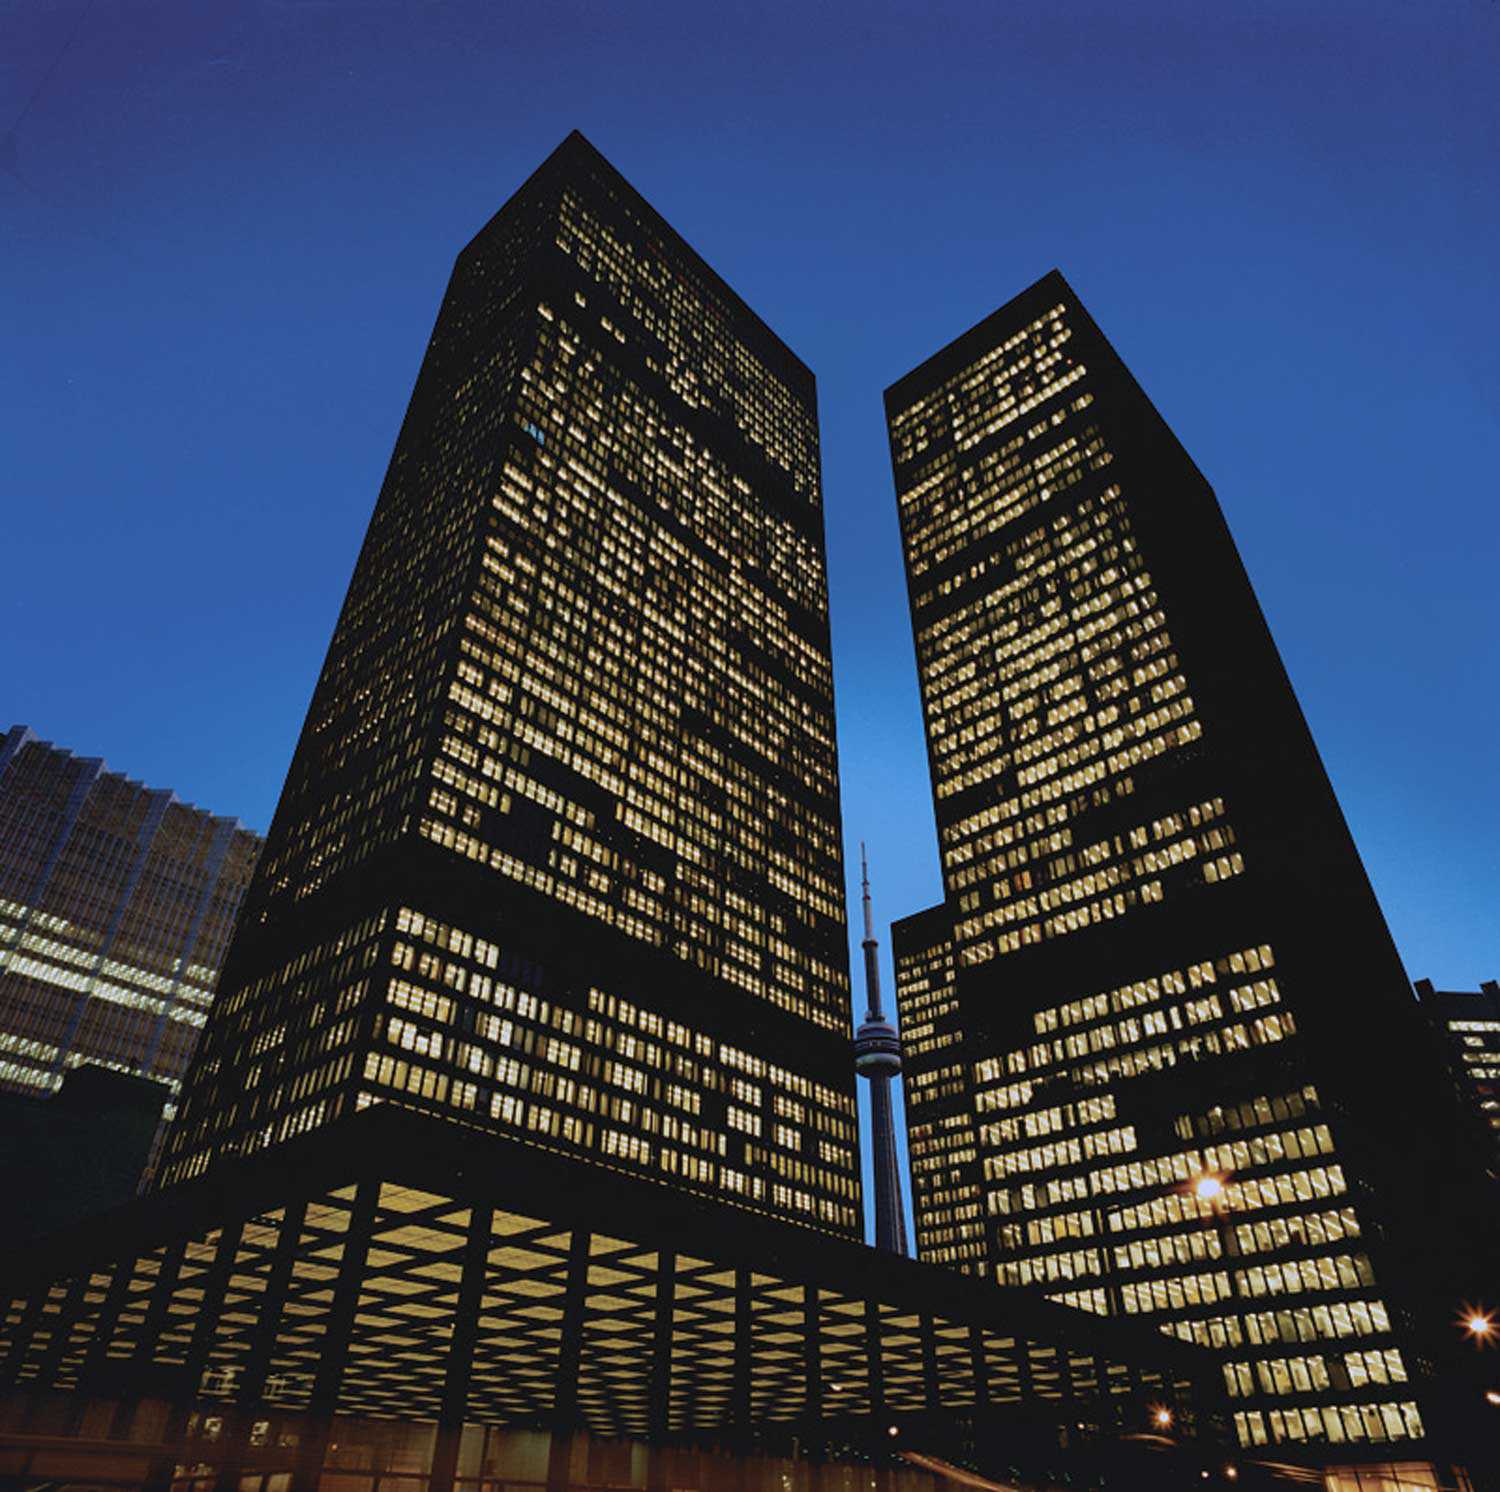 Maintenir l’équilibre : L’architecture moderne du Centre Toronto-Dominion fait partie du patrimoine architectural diversifié de l’Ontario. (Utilisation des droits d’auteur permise par la société Cadillac Fairview Ltée.)